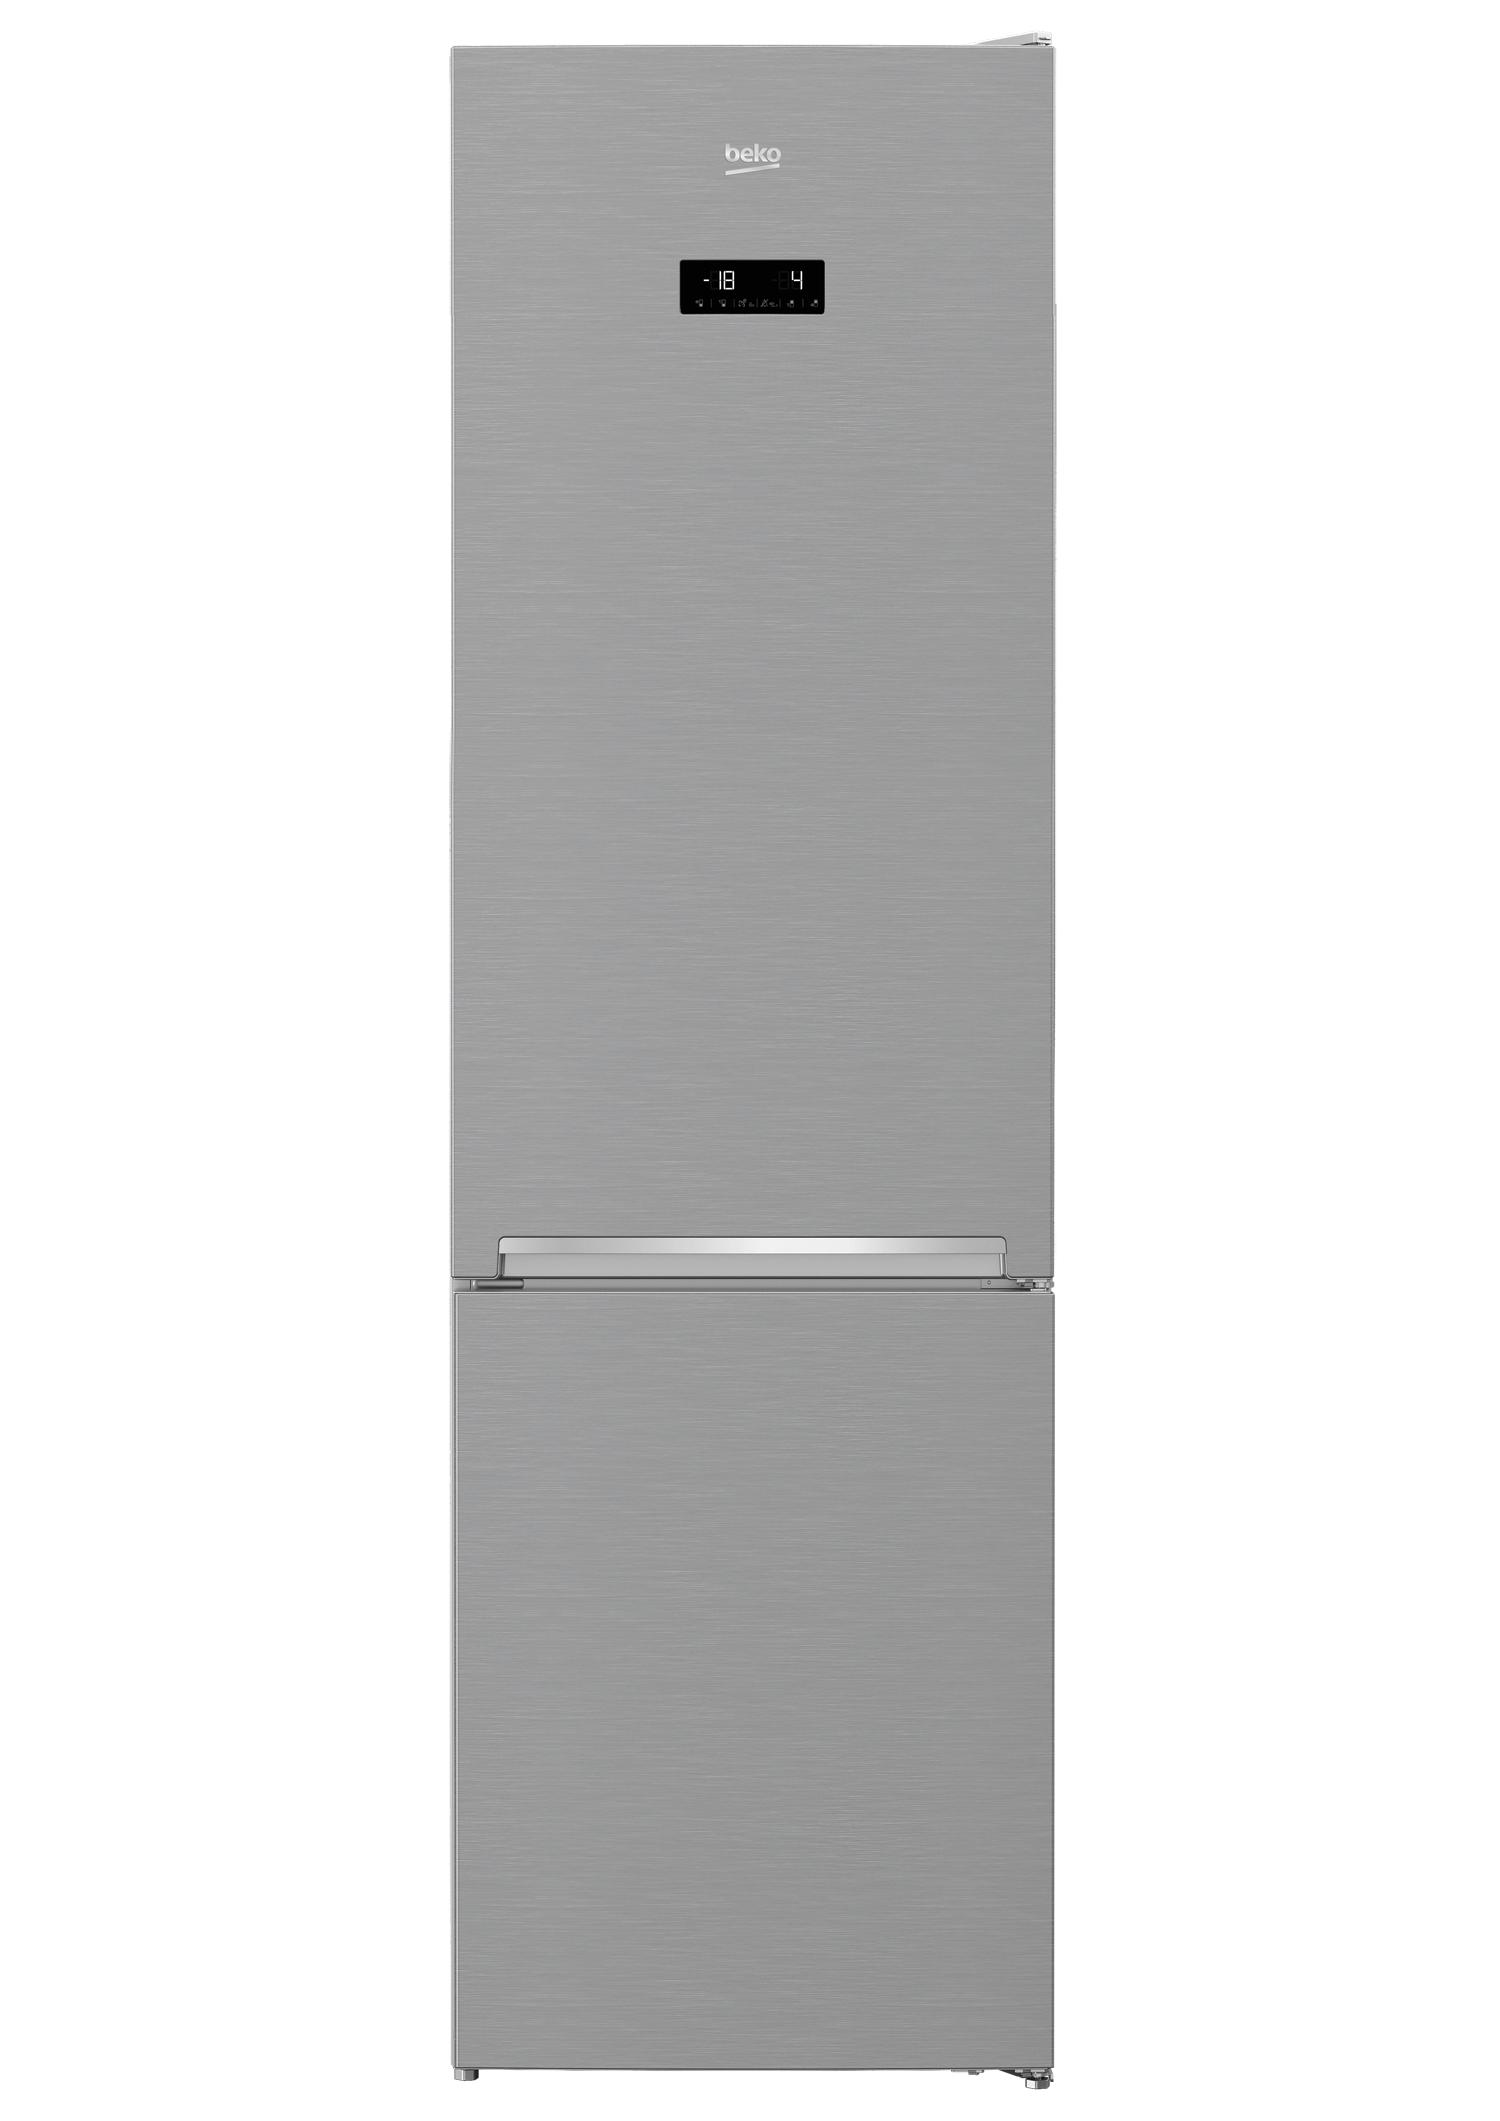 Selected image for Beko RCNA406E40ZXBN Kombinovani frižider, 362 l, No Frost, Nerđajući čelik